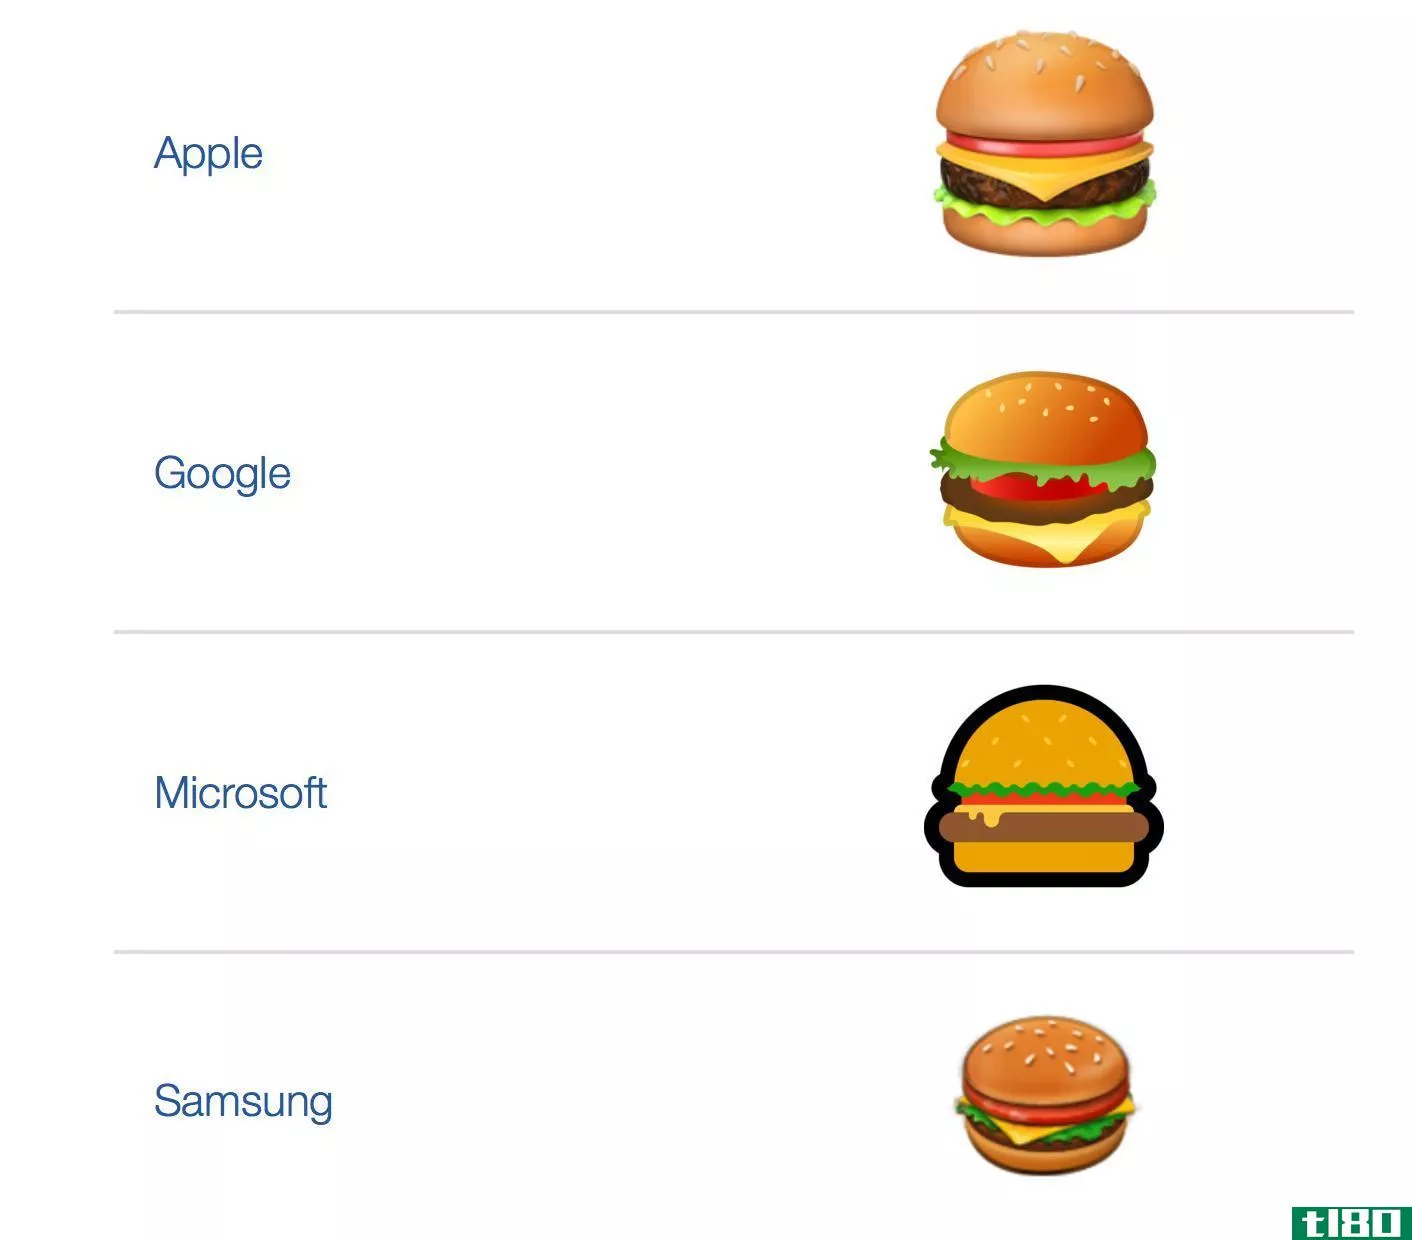 谷歌首席执行官将修复汉堡包表情符号作为首要任务